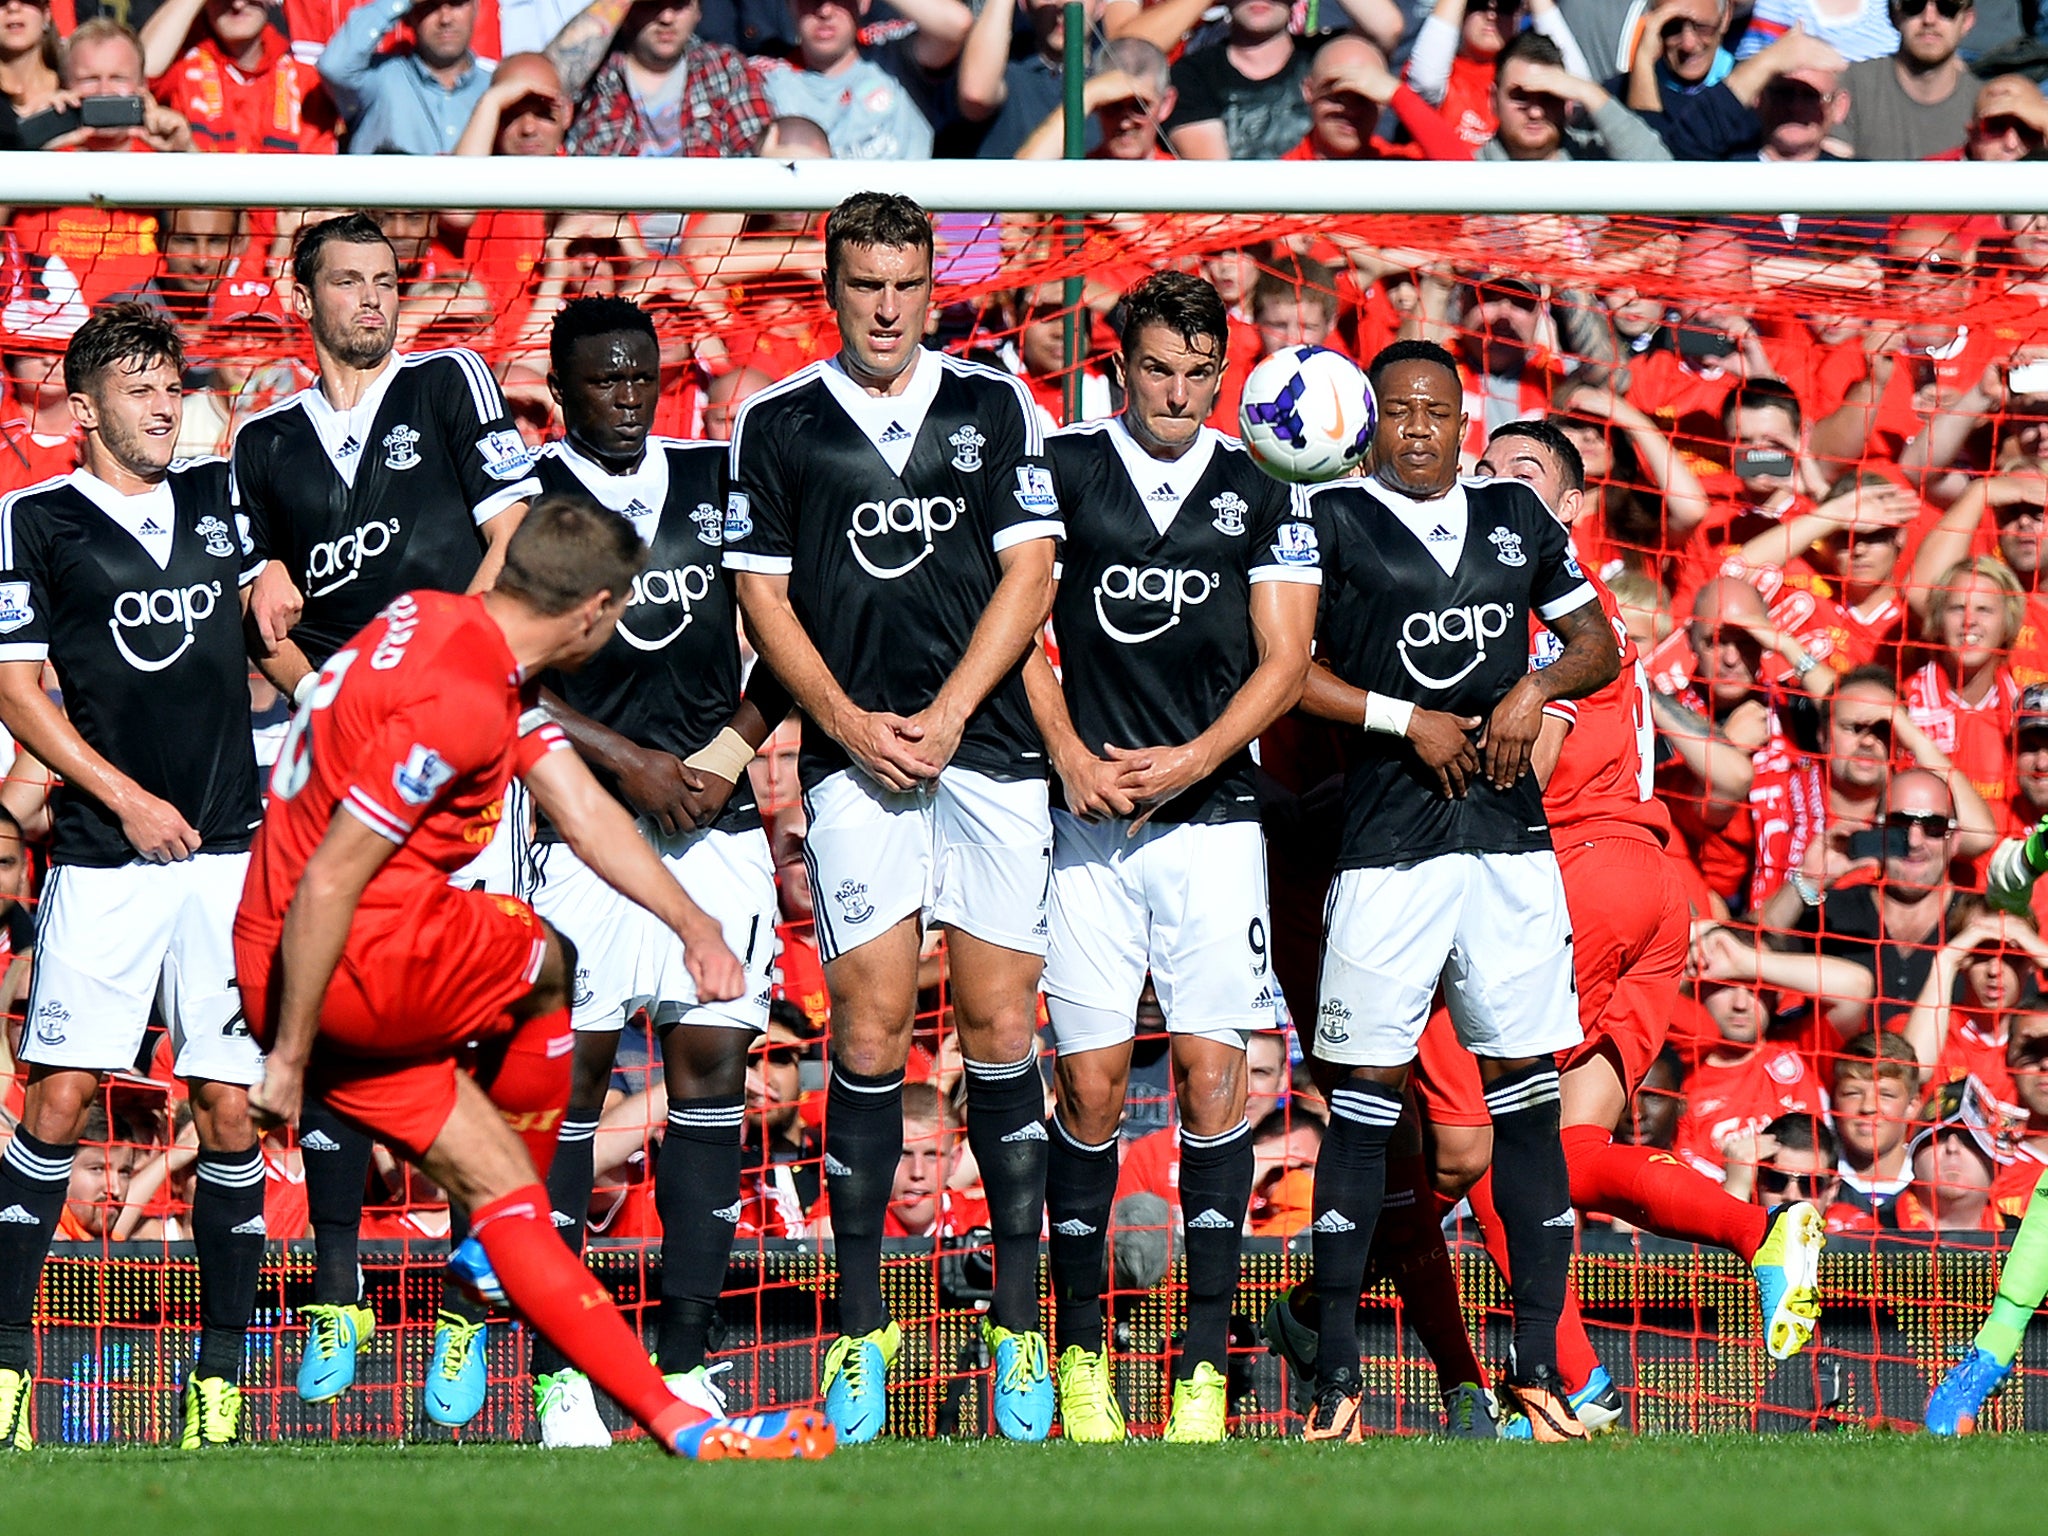 Liverpool's Steven Gerrard takes a free kick against Southampton